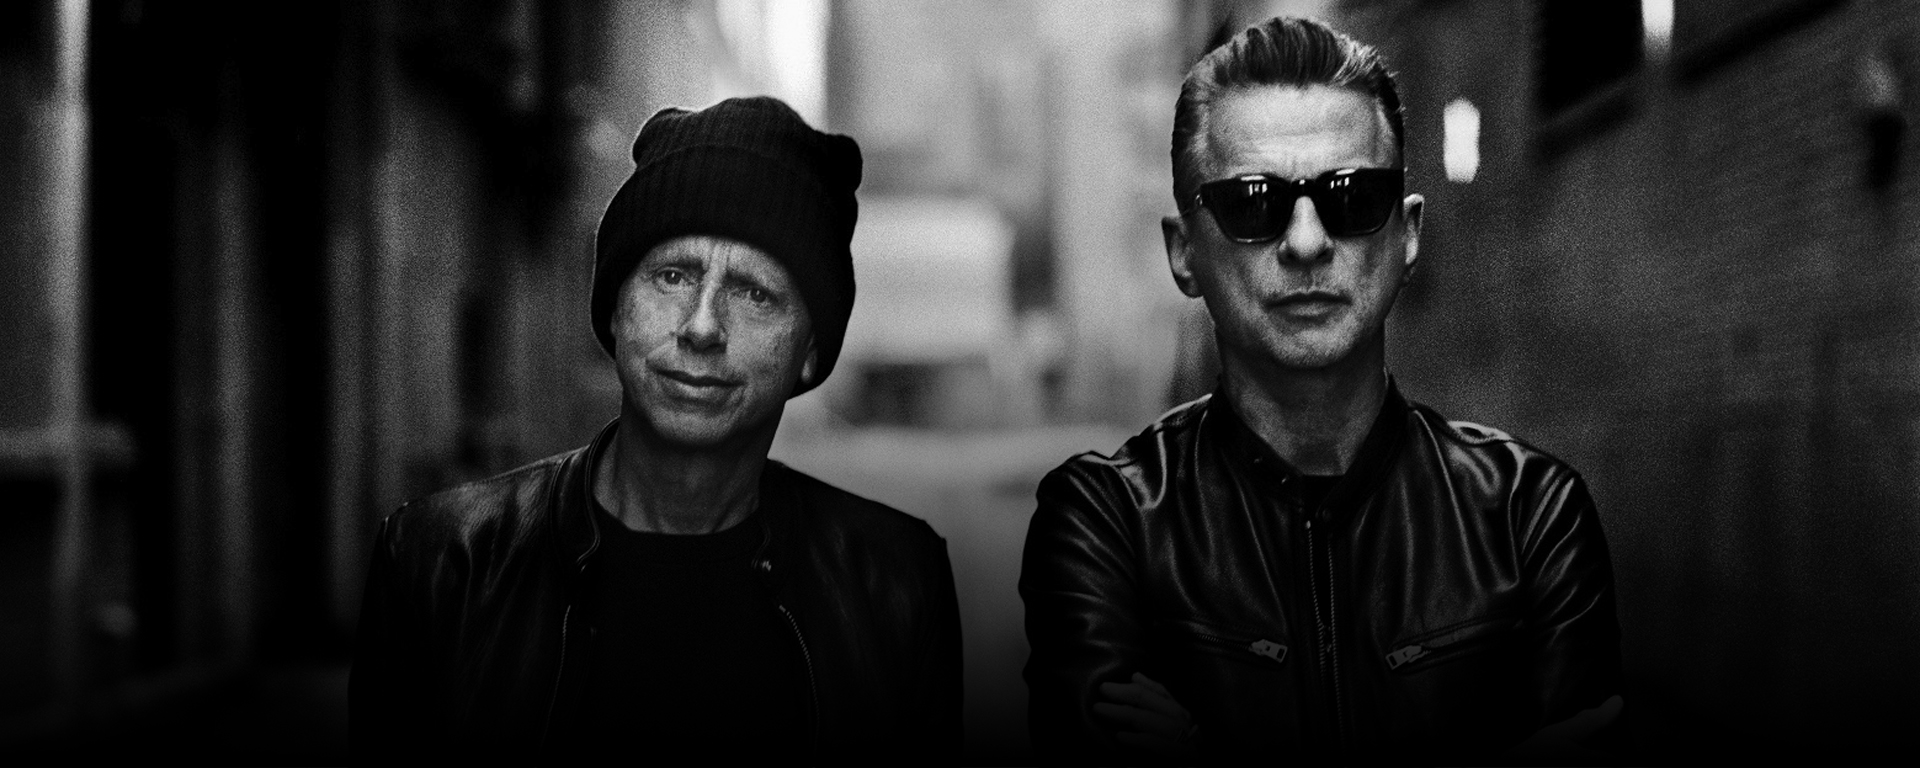 Skupina Depeche Mode po piatich rokoch ohlásila celosvetové turné. V Bratislave sa predstaví v máji budúceho roku.